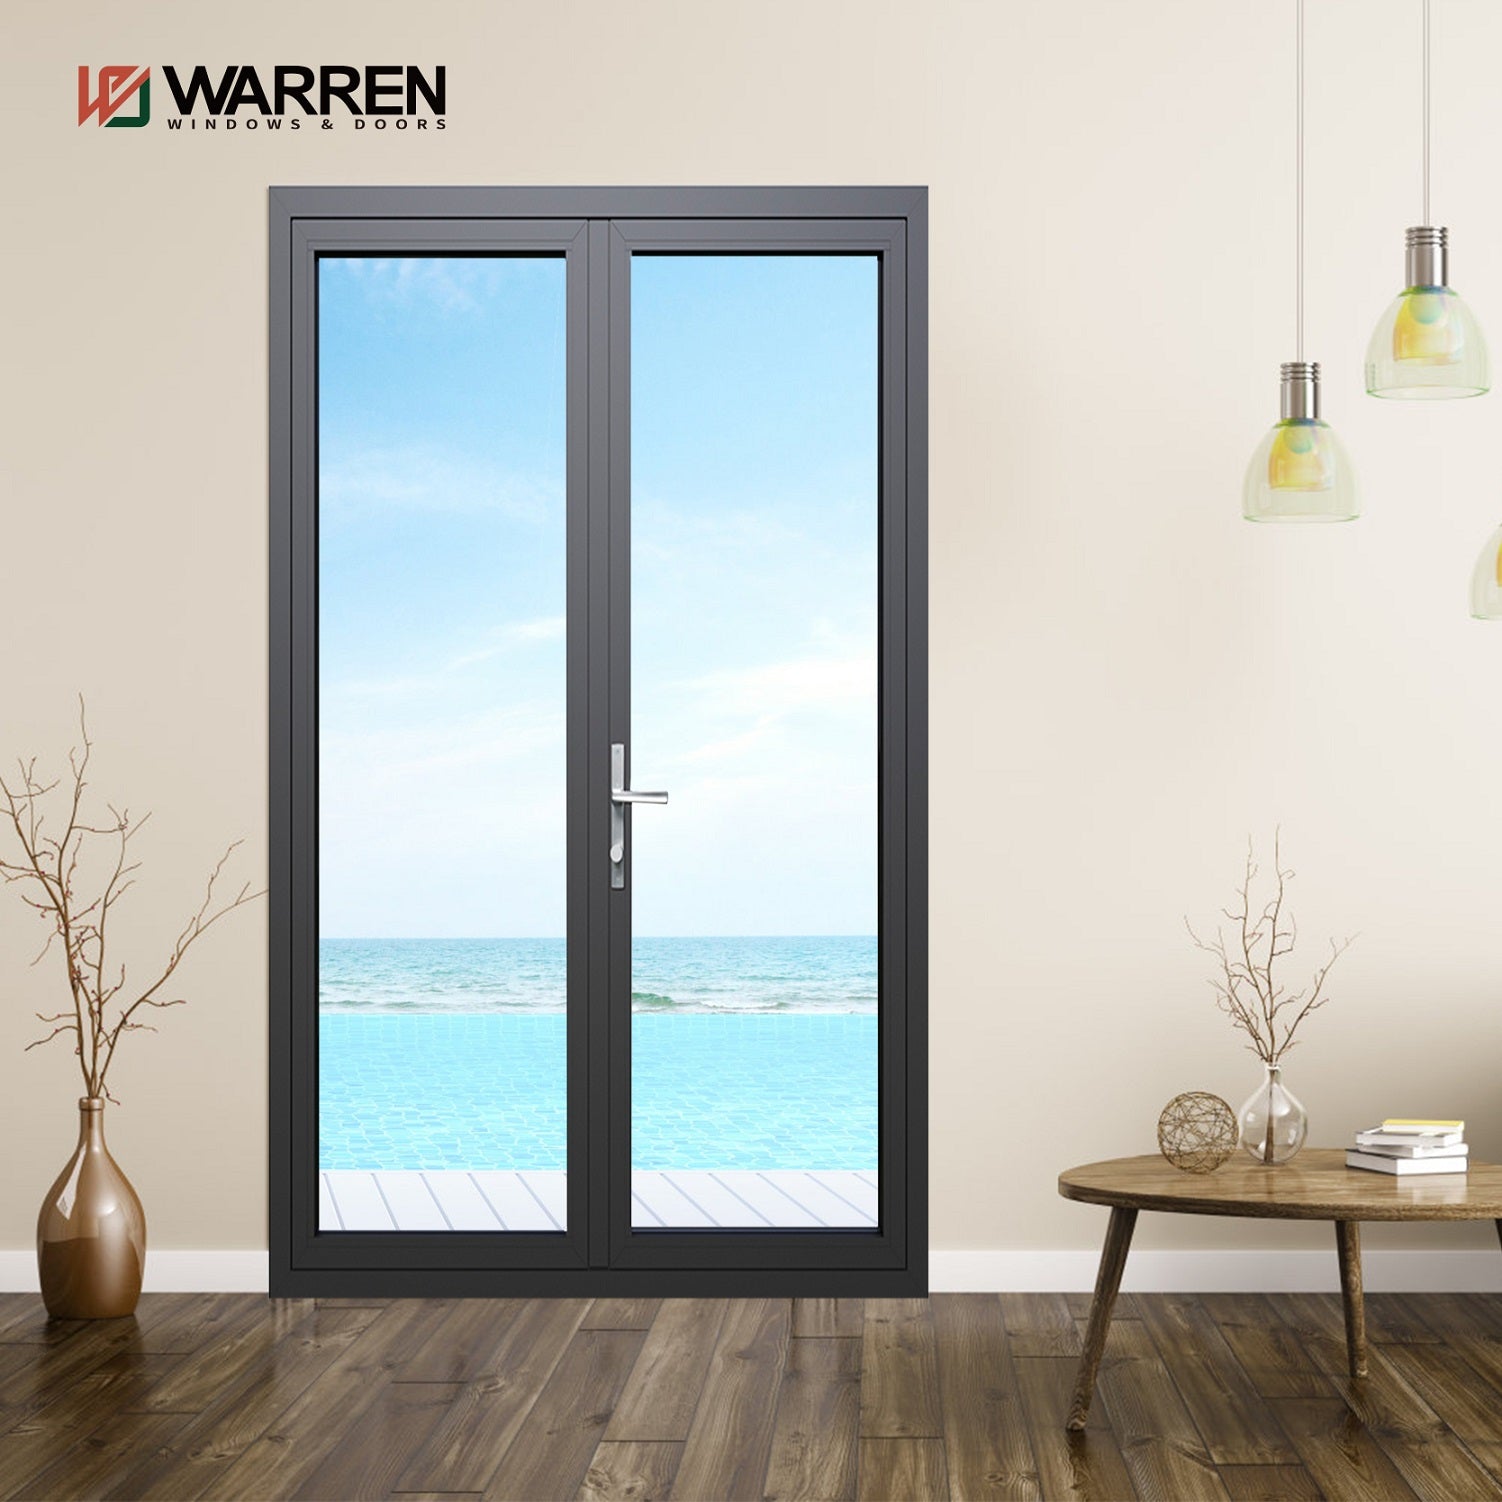 Warren New Model Double Glass Aluminium Casement Doors For House Swing Doors And  Hinged Door